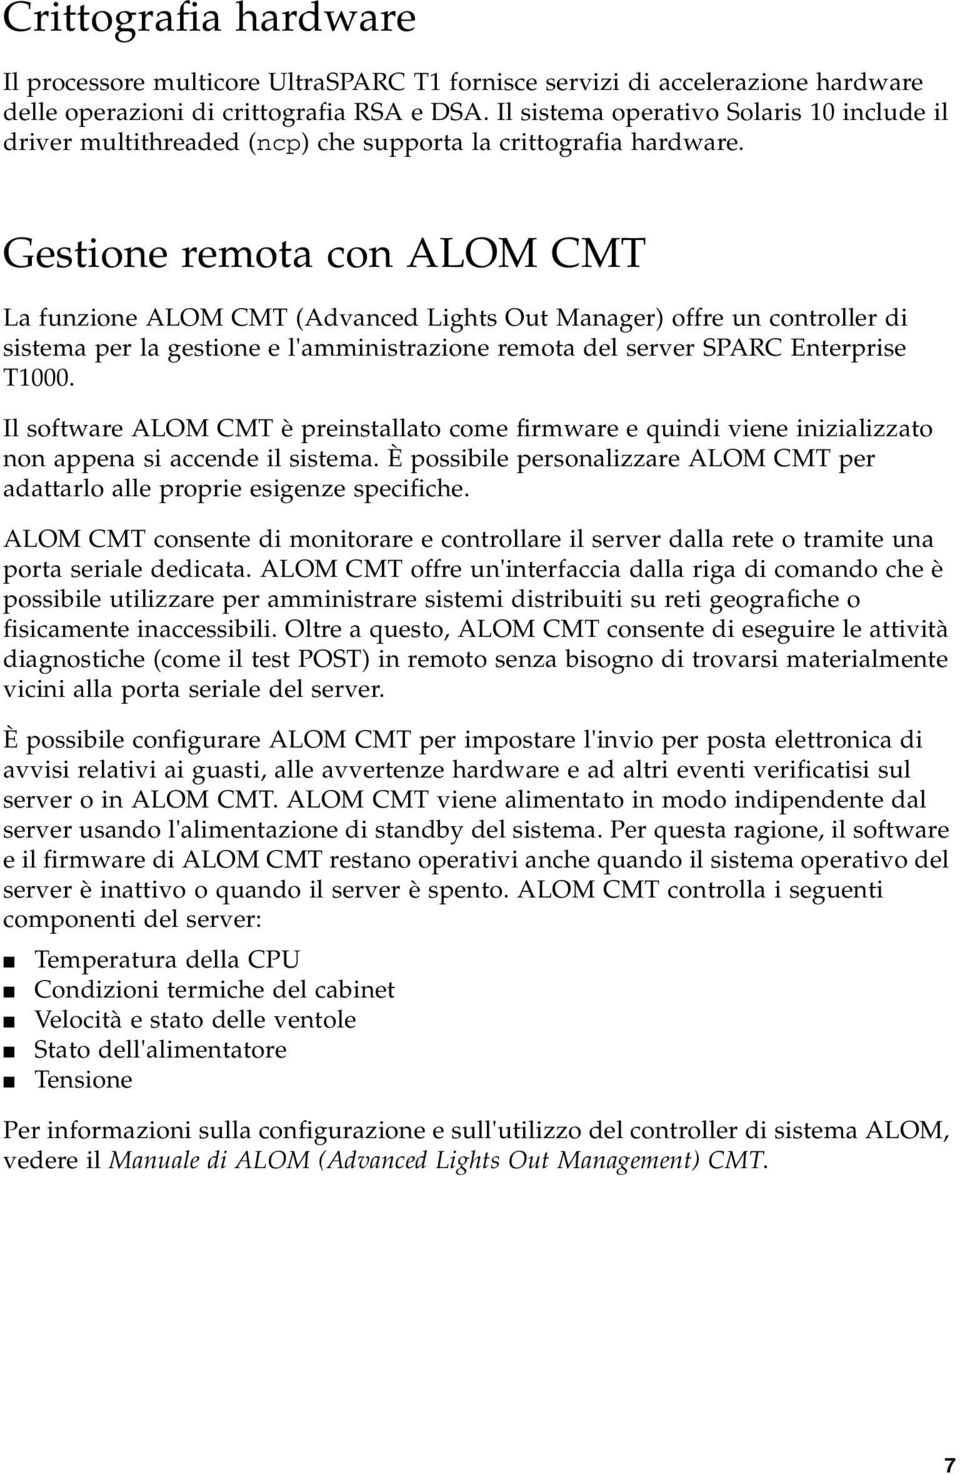 Gestione remota con ALOM CMT La funzione ALOM CMT (Advanced Lights Out Manager) offre un controller di sistema per la gestione e l'amministrazione remota del server SPARC Enterprise T1000.